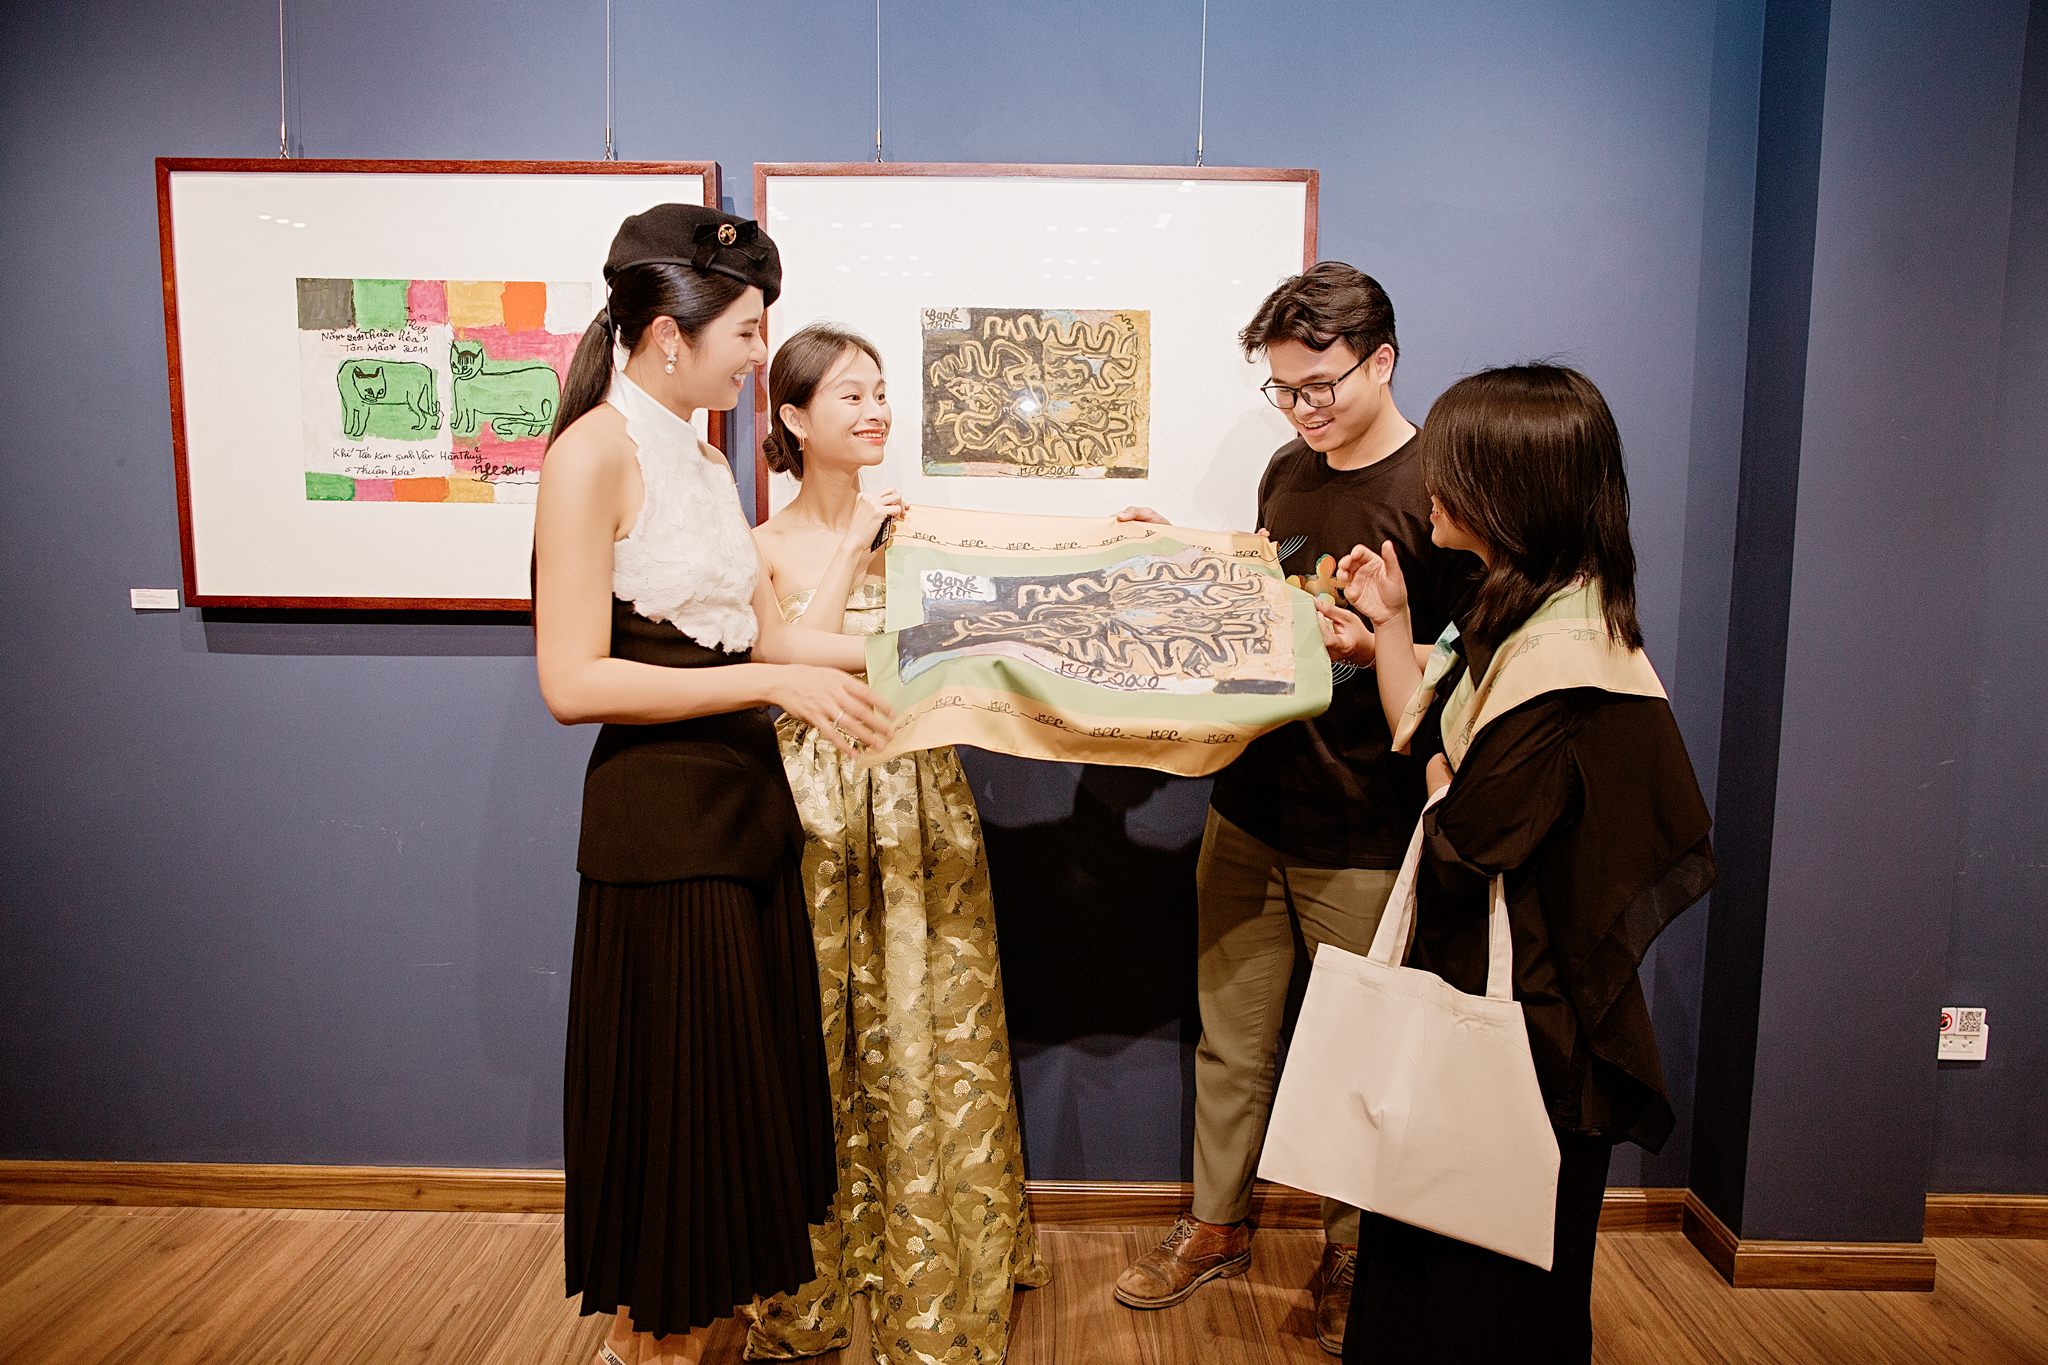 Hoa hậu Ngọc Hân thấy  may mắn khi tham gia triển lãm tranh của họa sĩ Nguyễn Tư Nghiêm với tư cách ban tổ chức. Ảnh: Nhân vật cung cấp